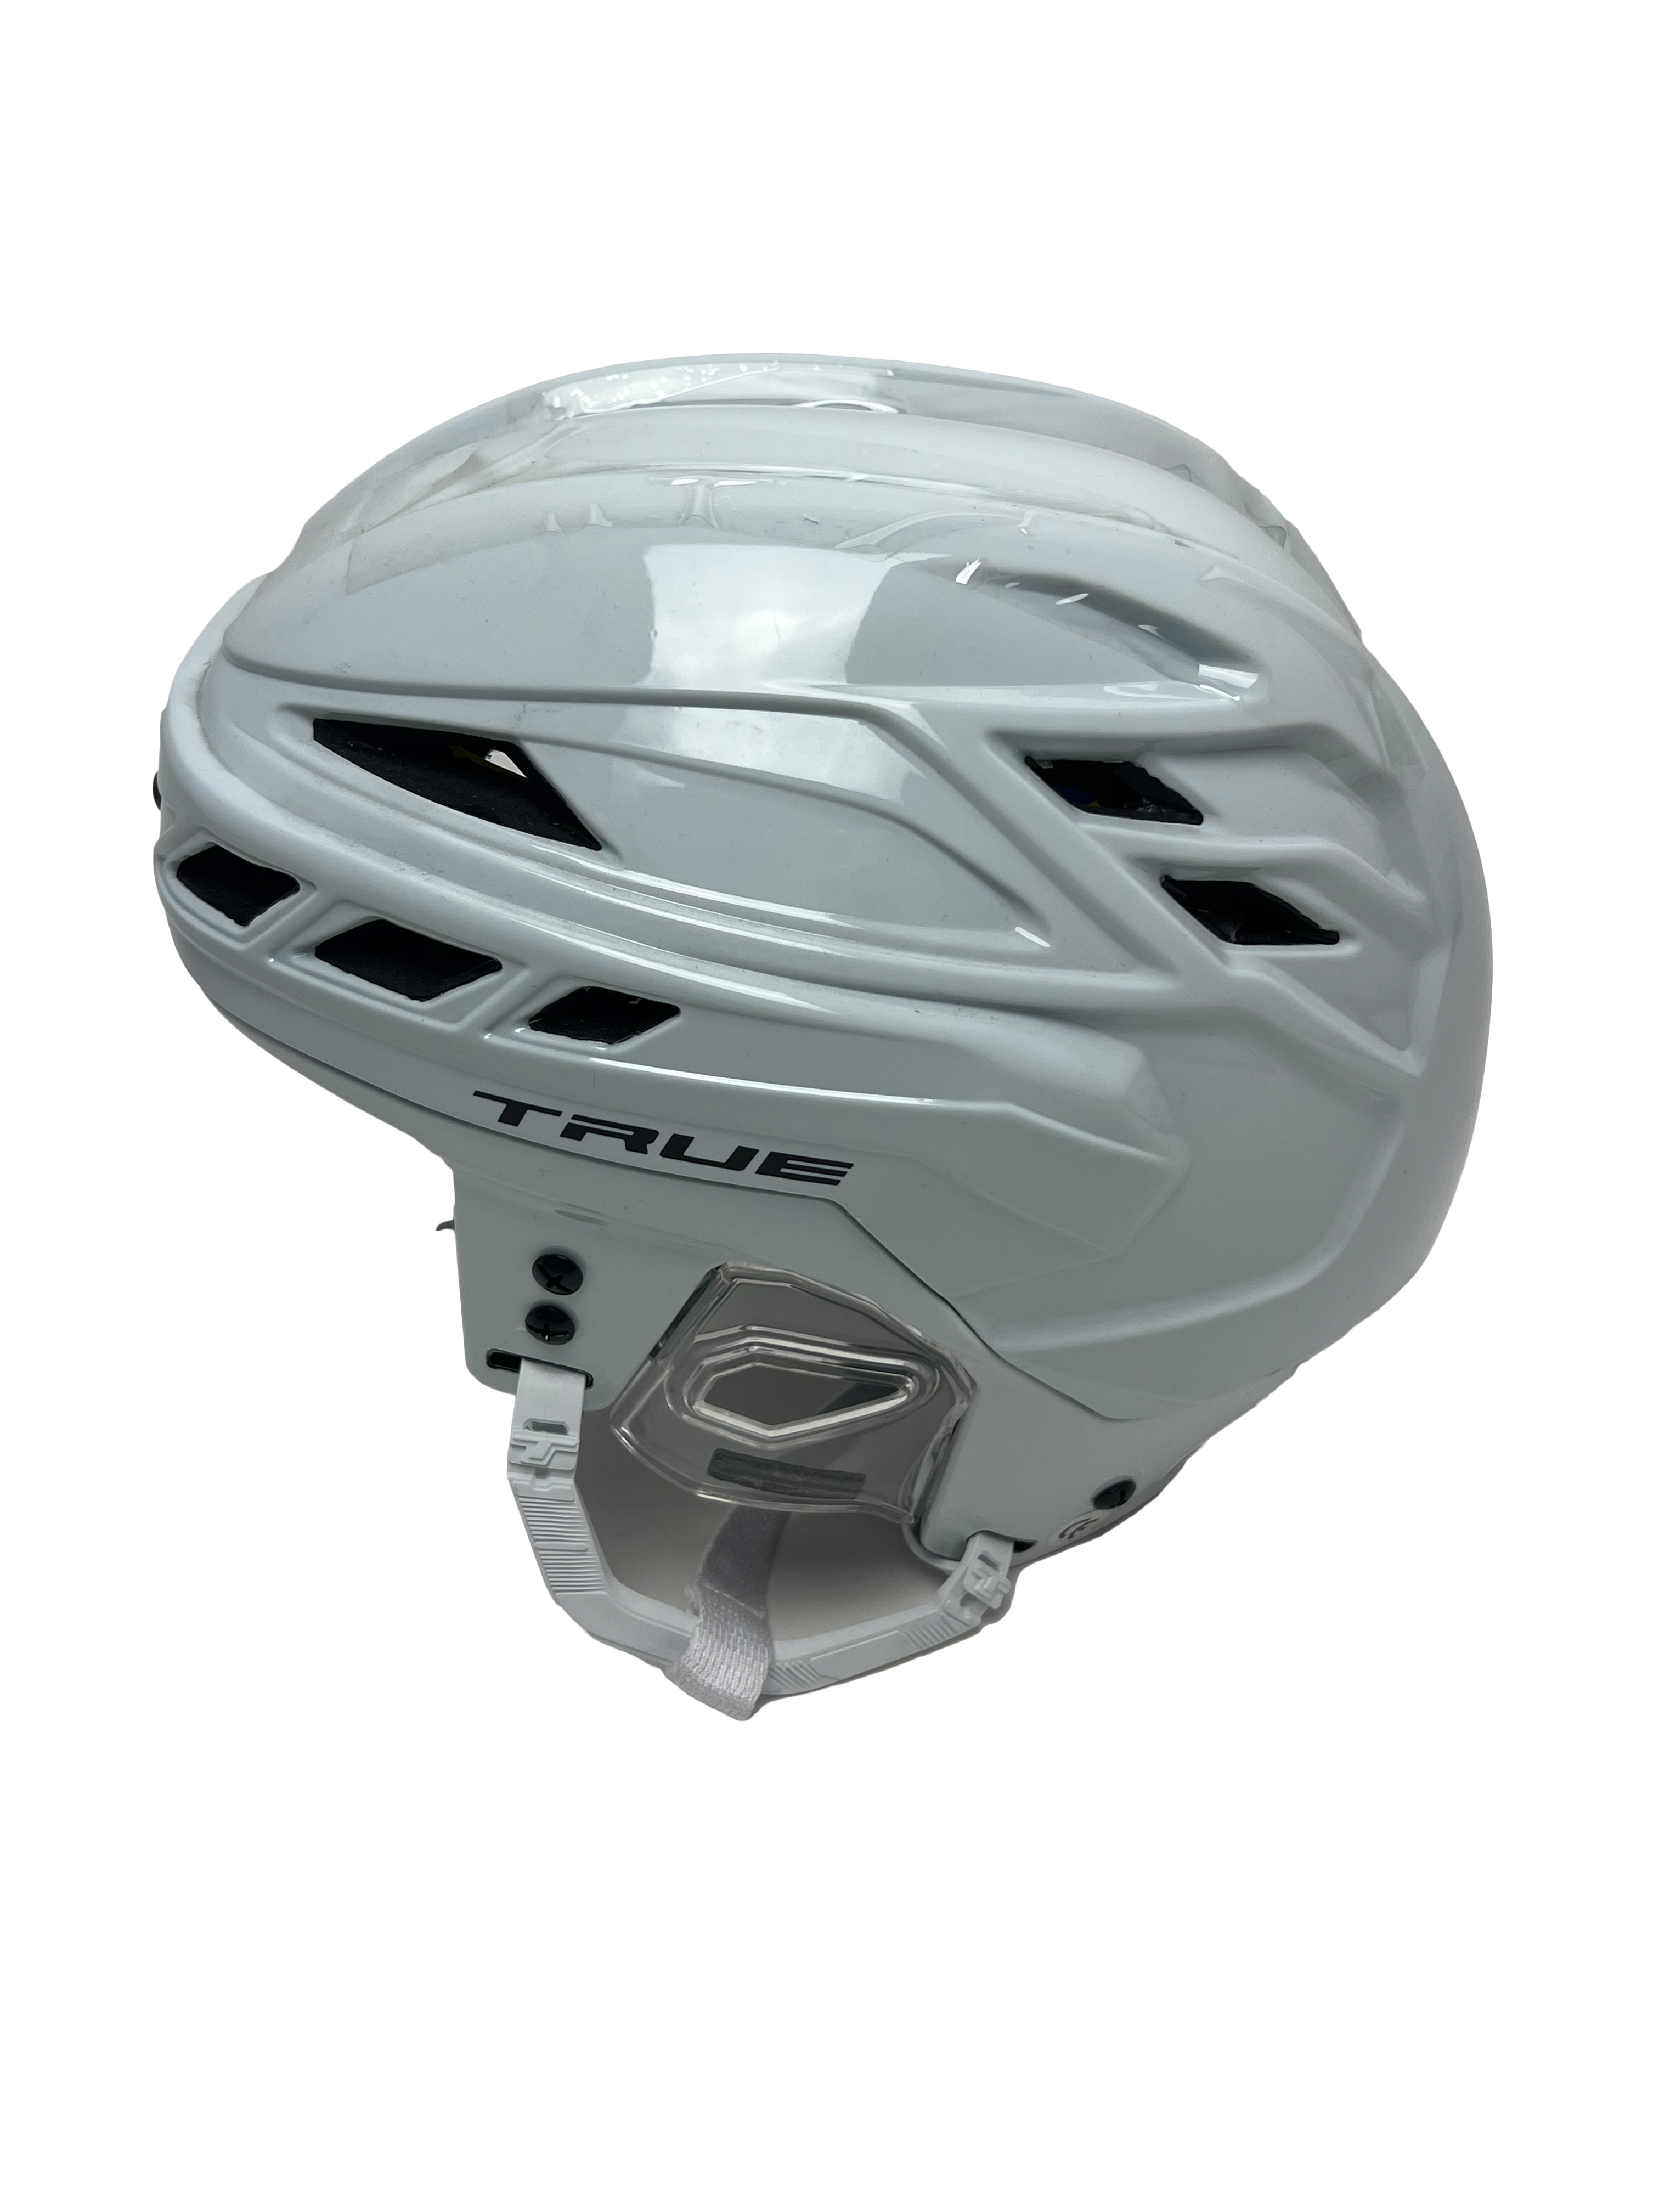 Size S - TRUE Dynamic 9 Pro White Helmet - Detroit Red Wings - Pro Stock  Hockey